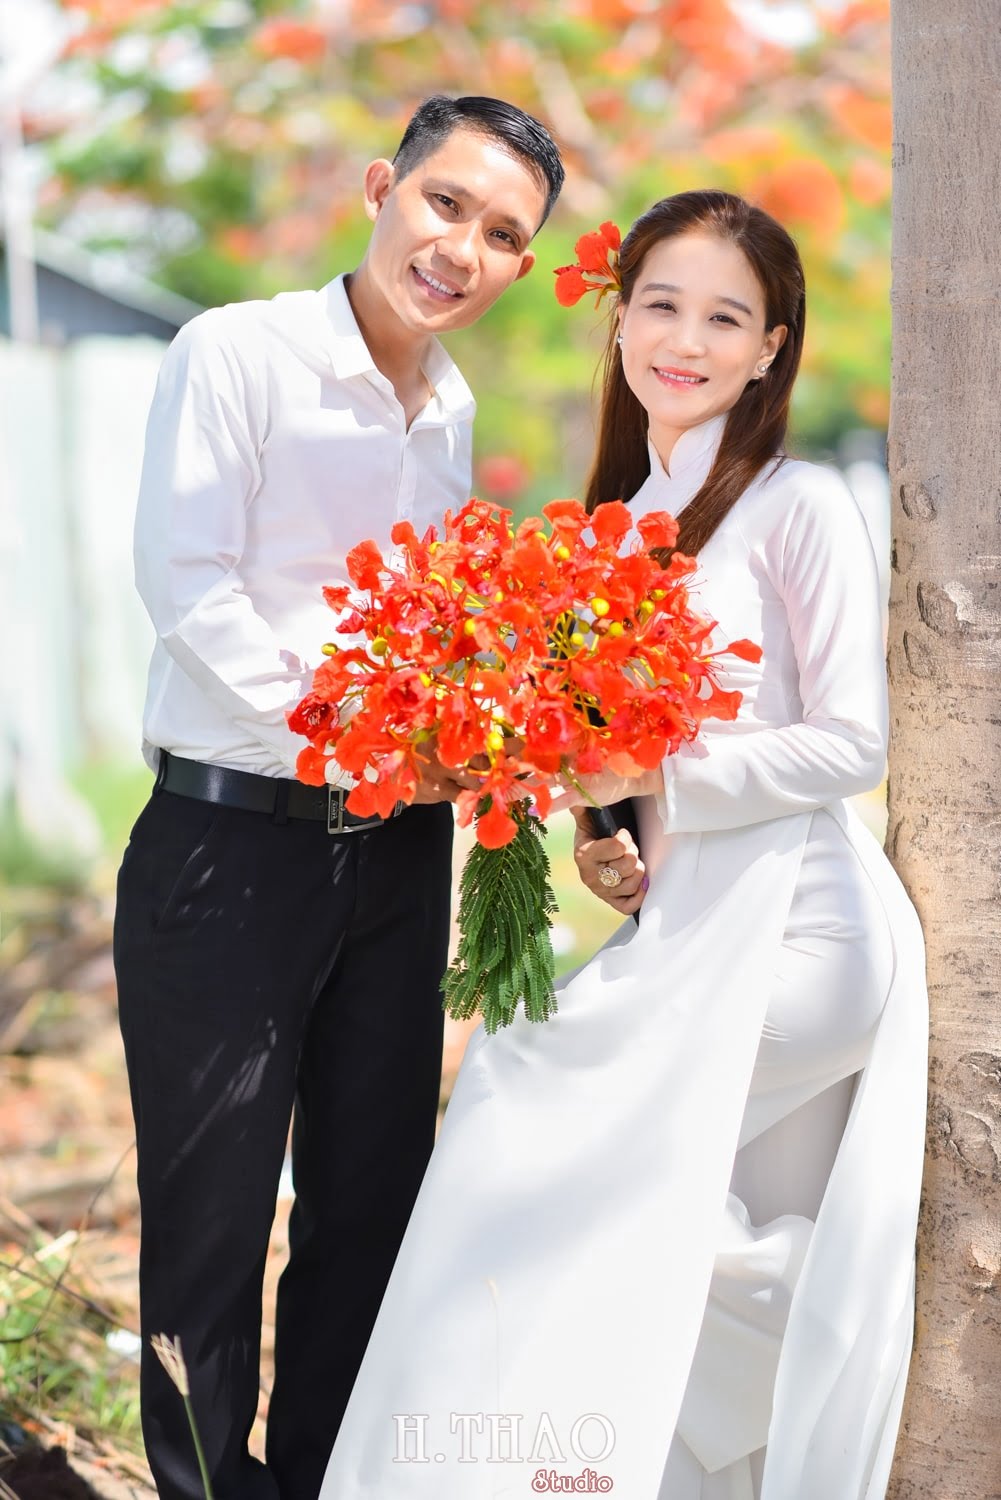 Anh hoa phuong 1 min - Bộ ảnh couple chụp với hoa phượng tuyệt đẹp - HThao Studio